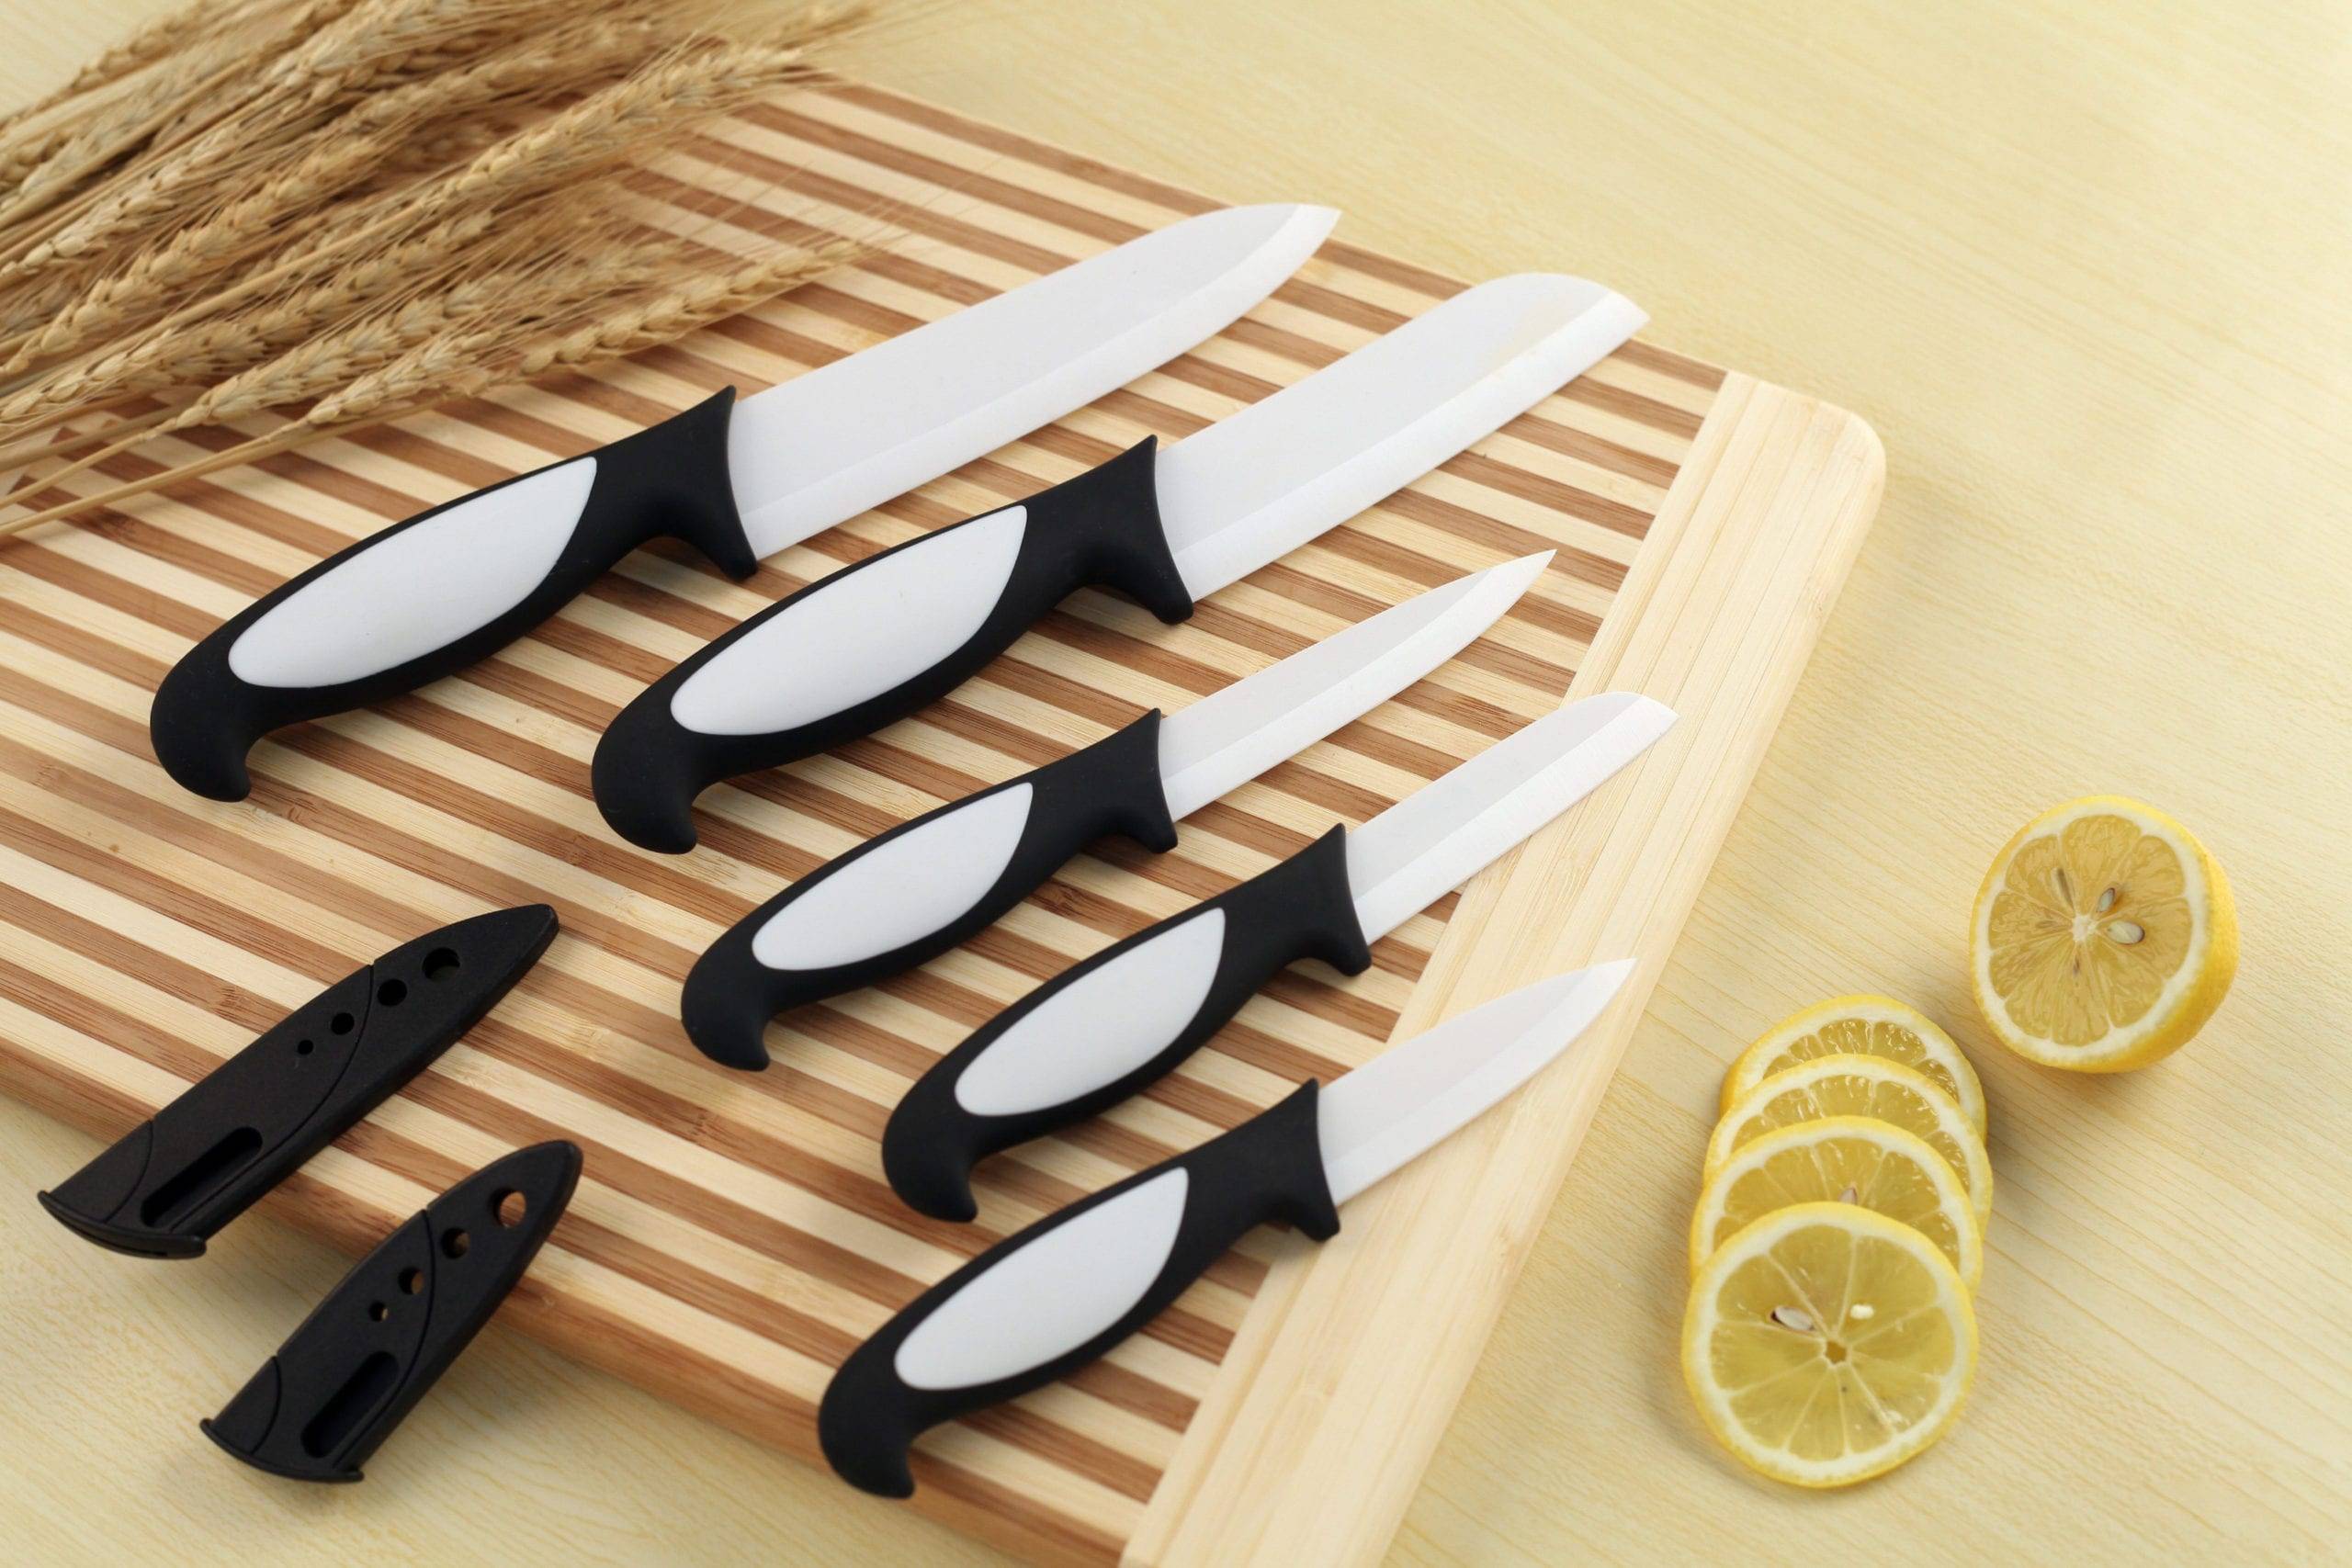 Керамические ножи: особенности, преимущества и недостатки, как наточить лезвие в домашних условиях